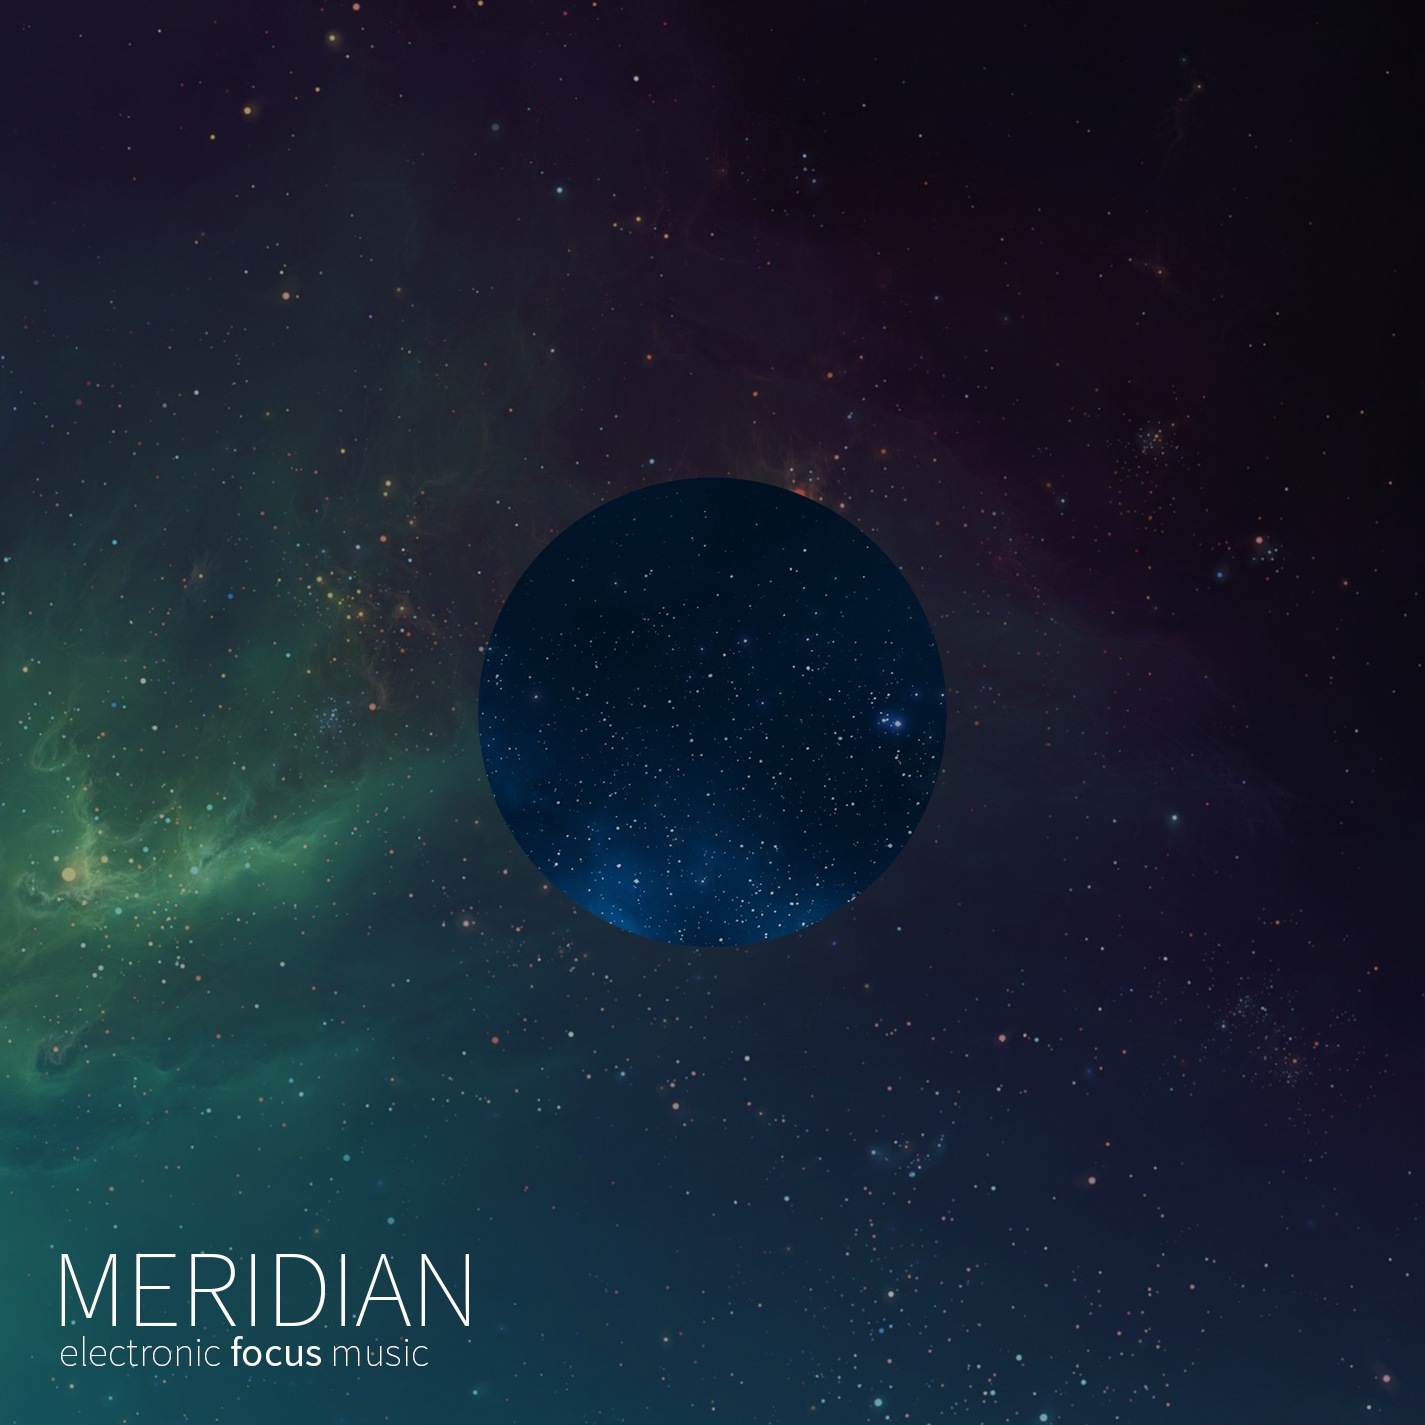 Meridian’s album cover